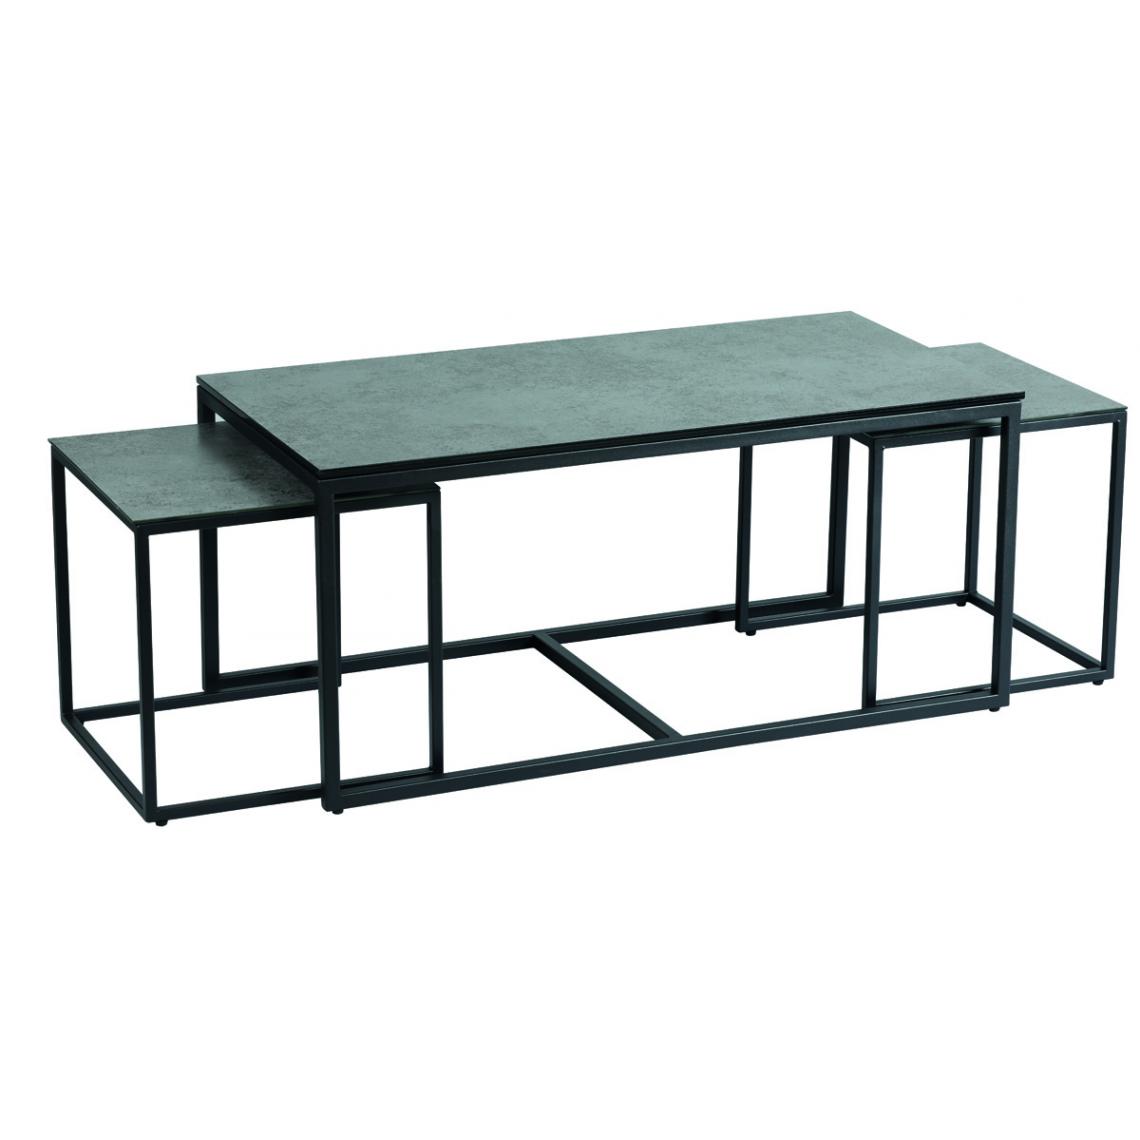 Pegane - Lot de 3 tables gigognes en verre trempé / céramique coloris anthracite mat - Tables basses